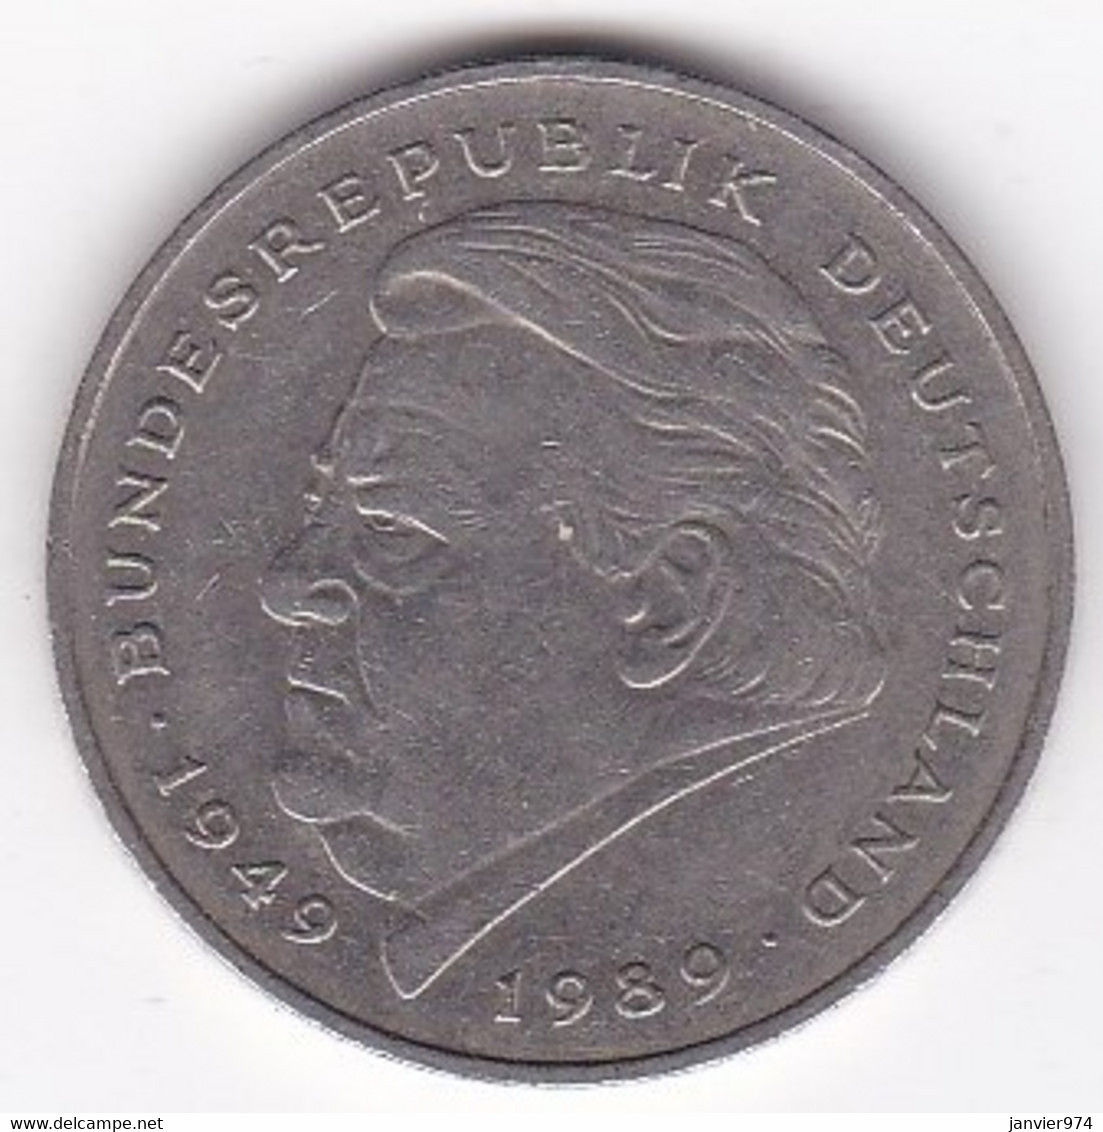 2 Deutsche Mark 1990 D Munich, Franz Josef Strauss ,KM# 175 - 2 Mark